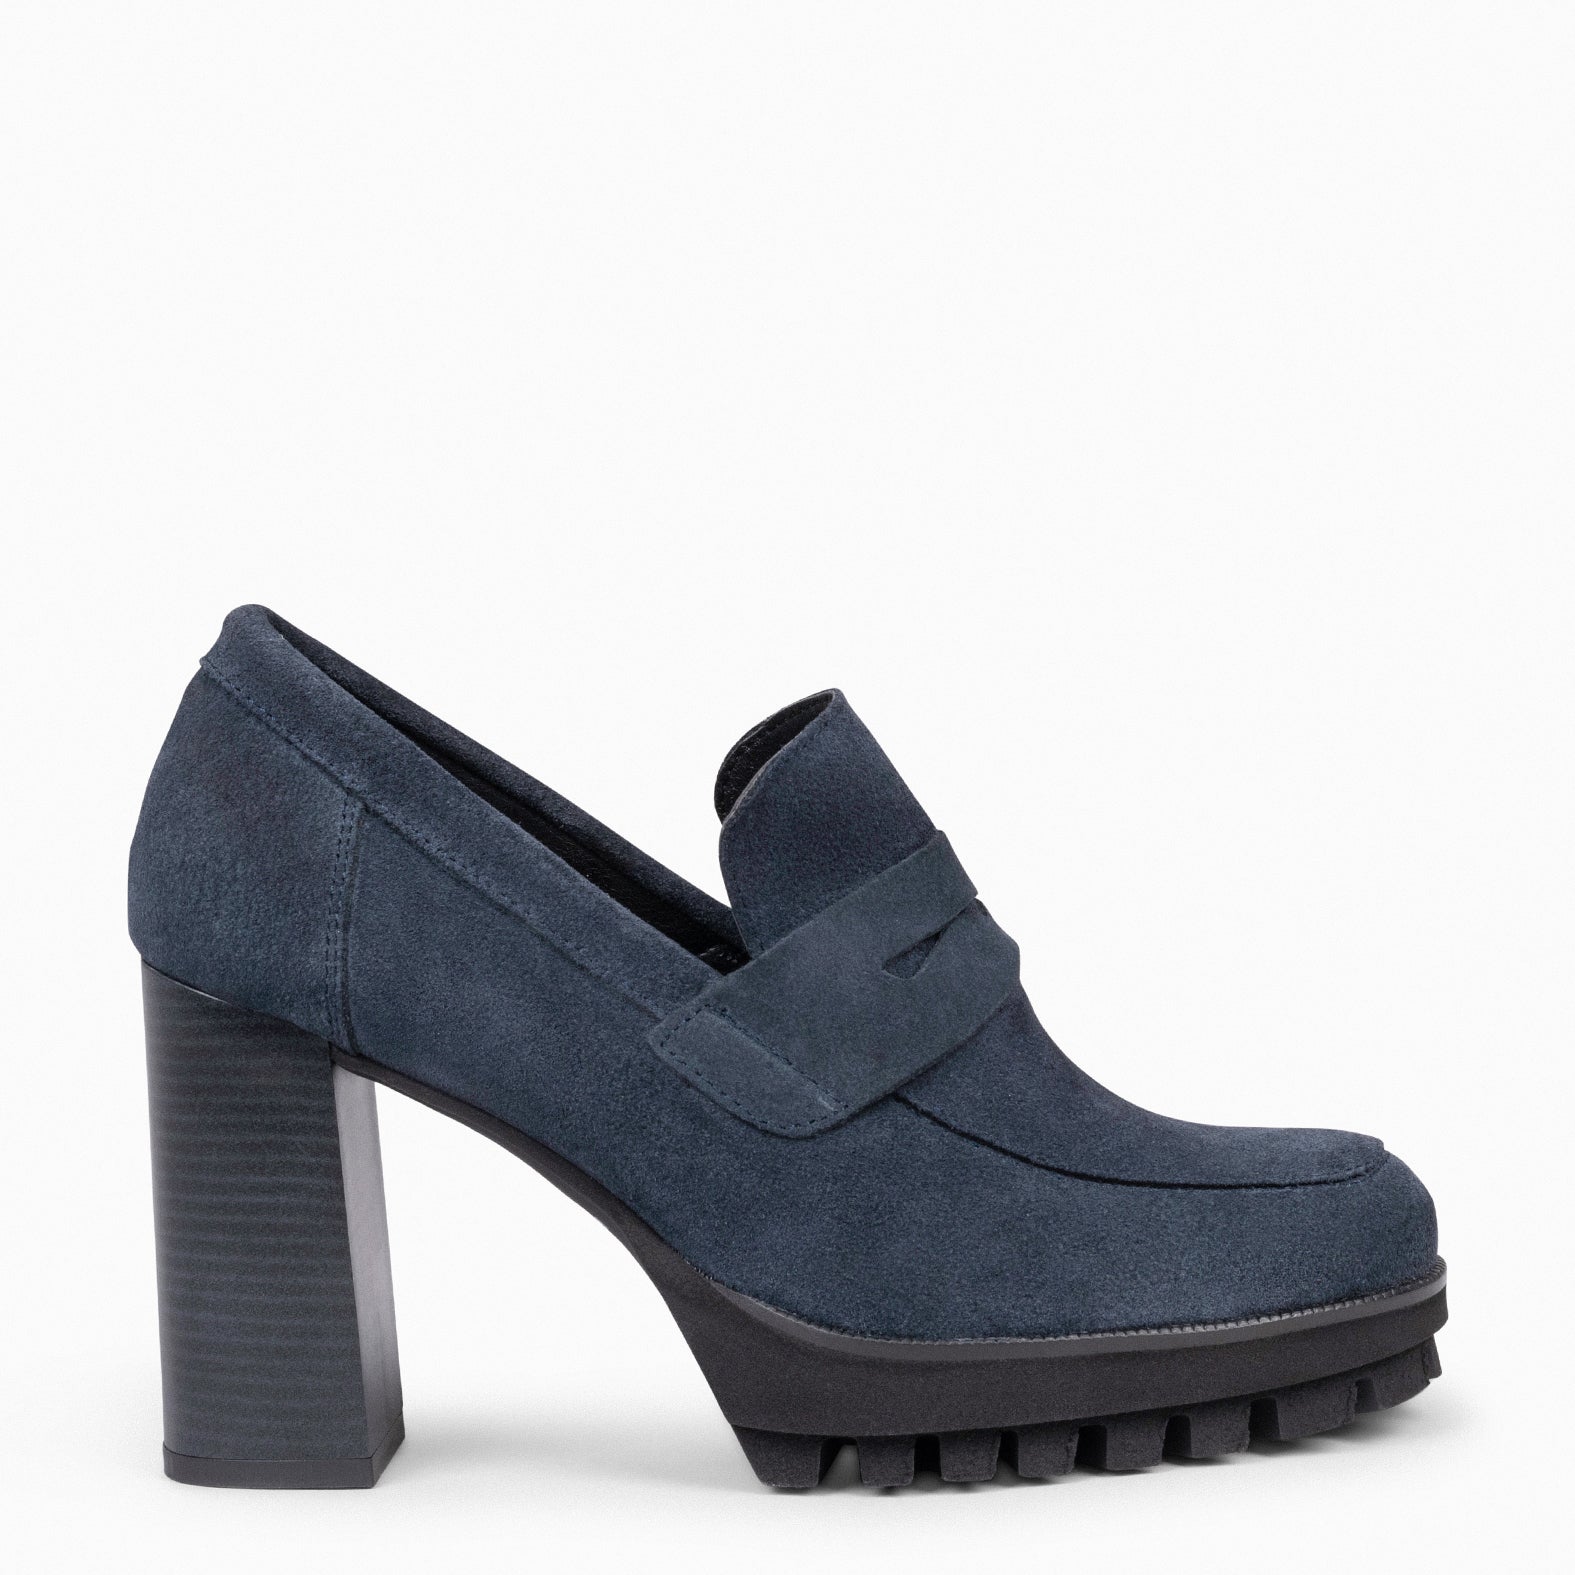 TREND – BLUE high heel moccasins with platform 